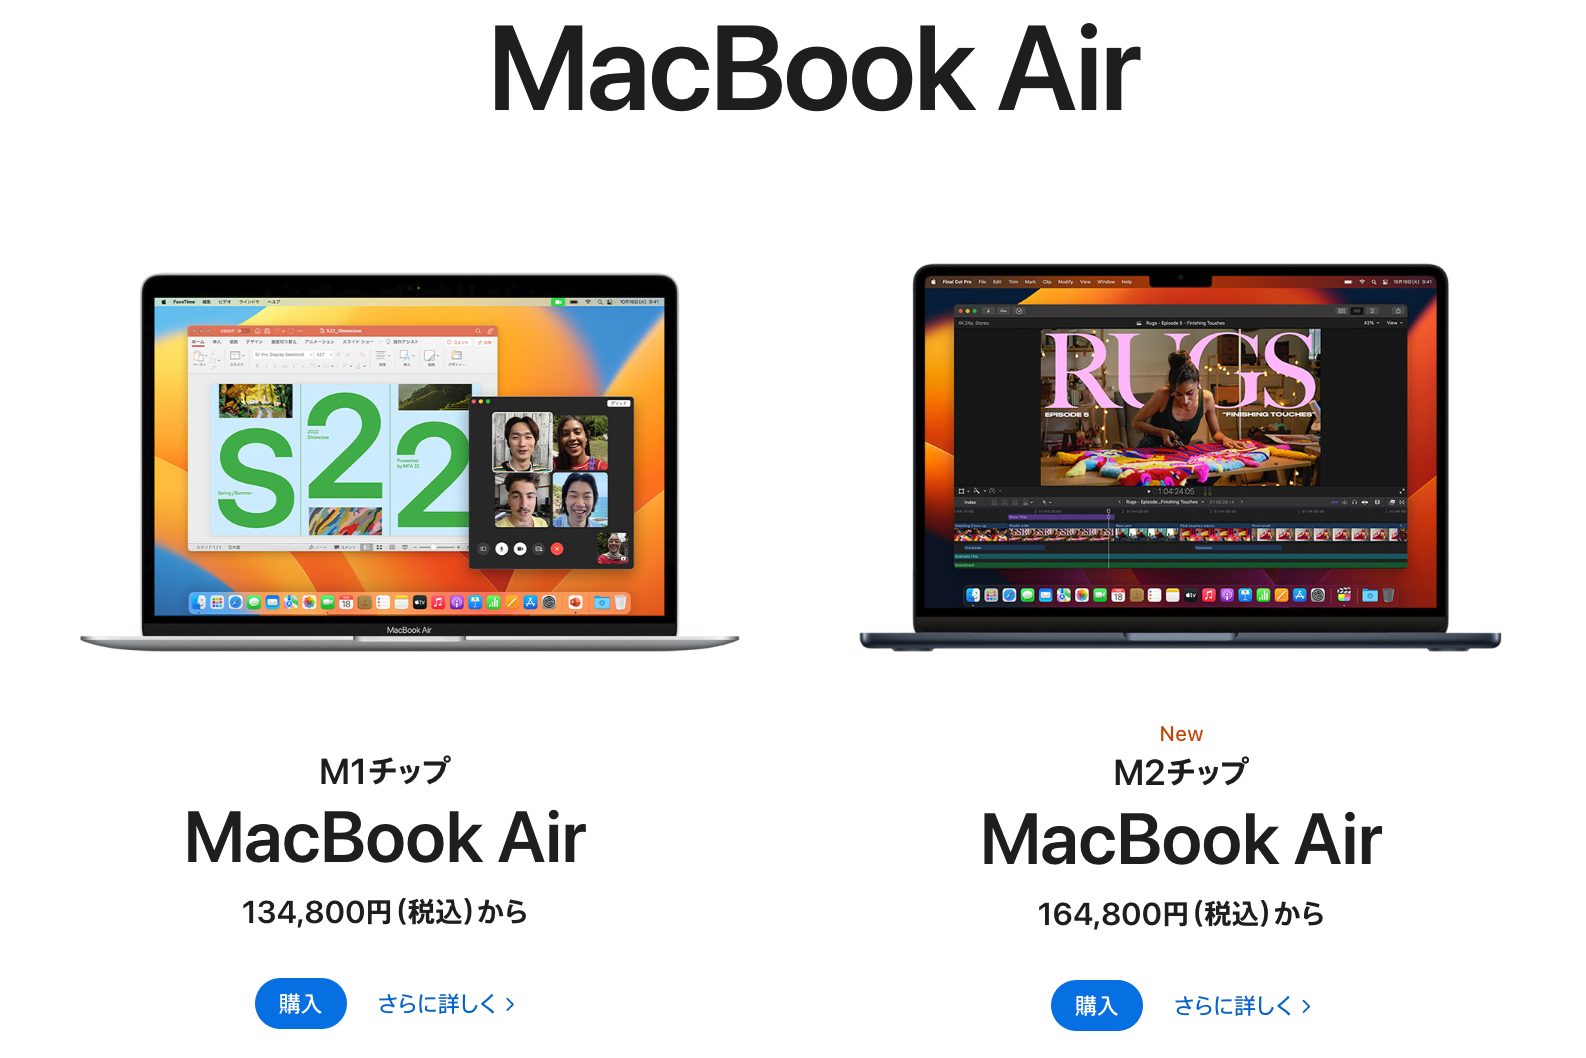 M2 MacBook Airがブログやクリエイティブにおすすめな6つの理由と魅力